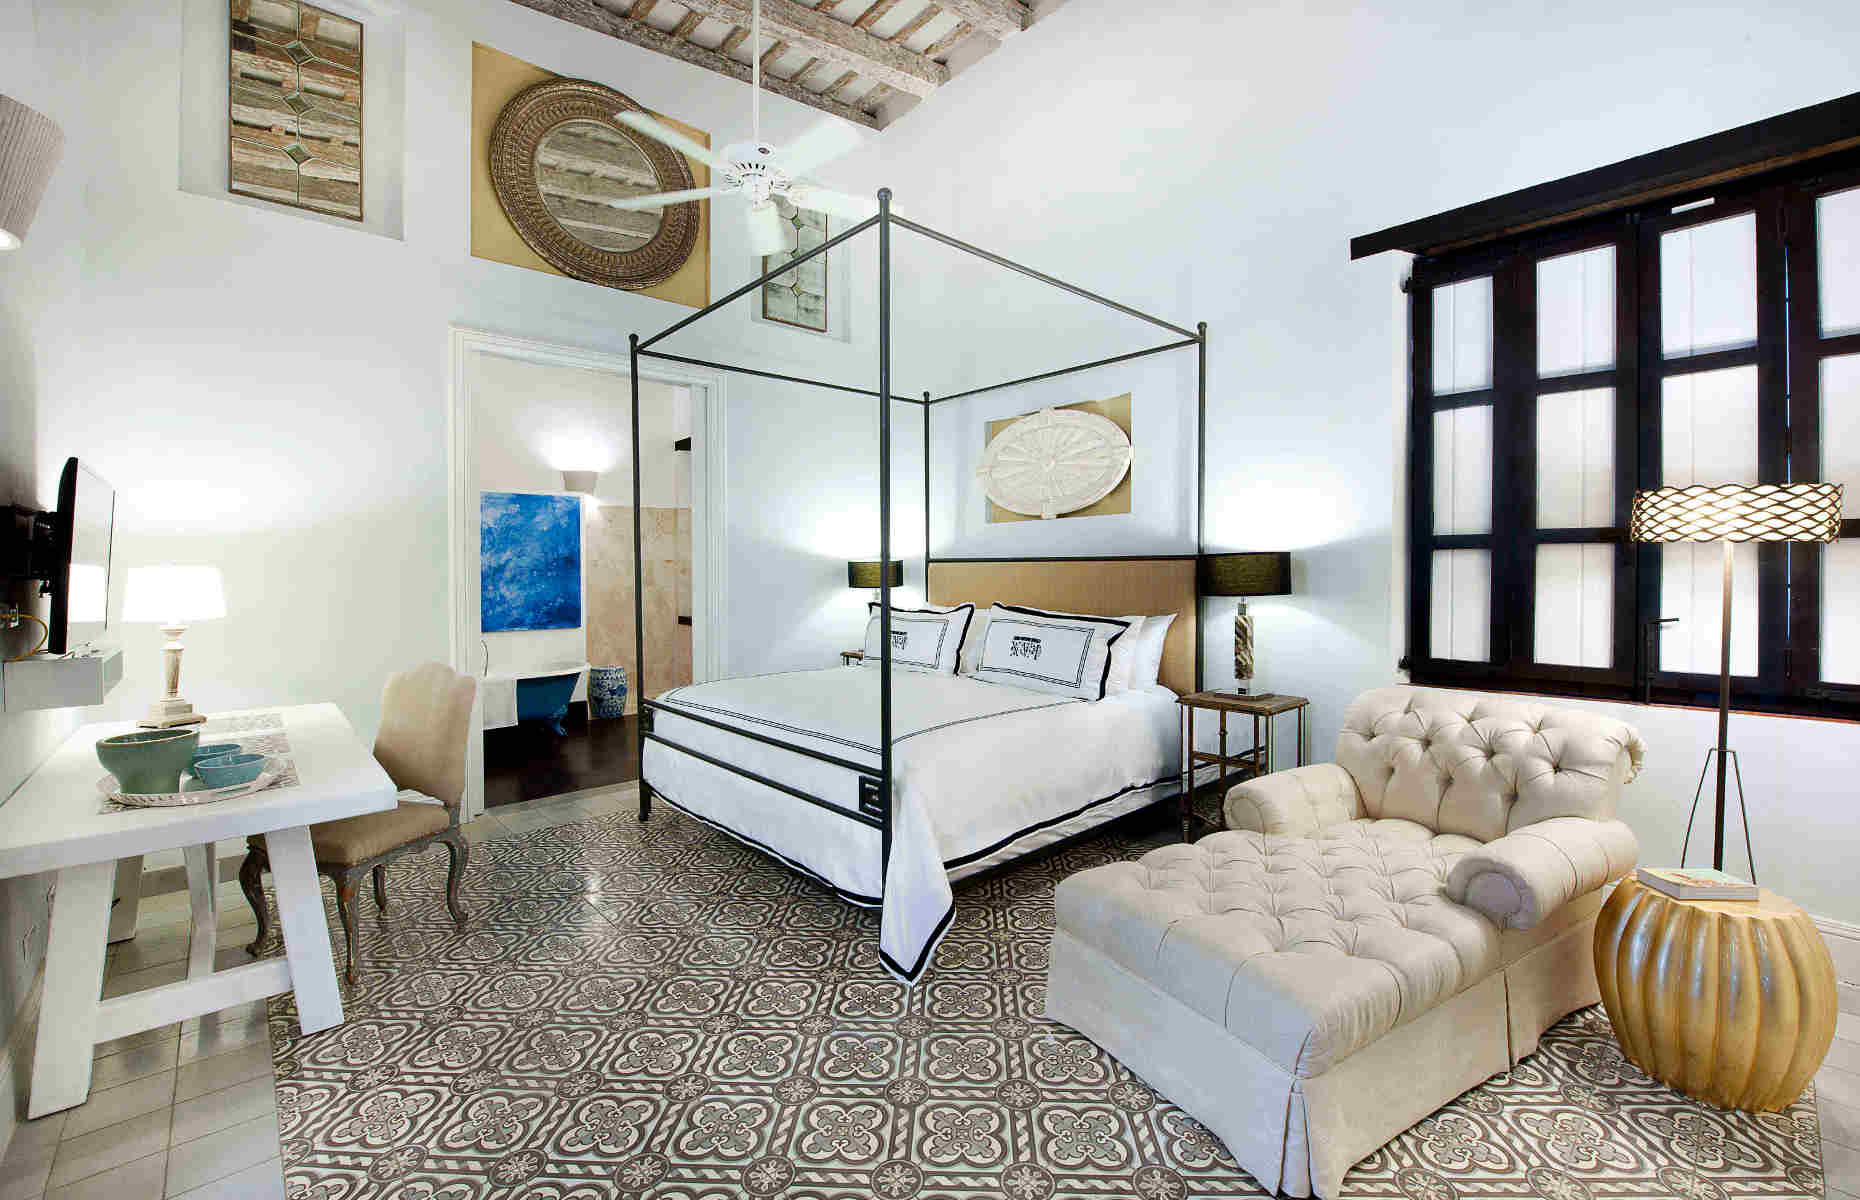 Casas del XVI chambre luxury - Hôtel charme Santo Domingo, République Dominicaine